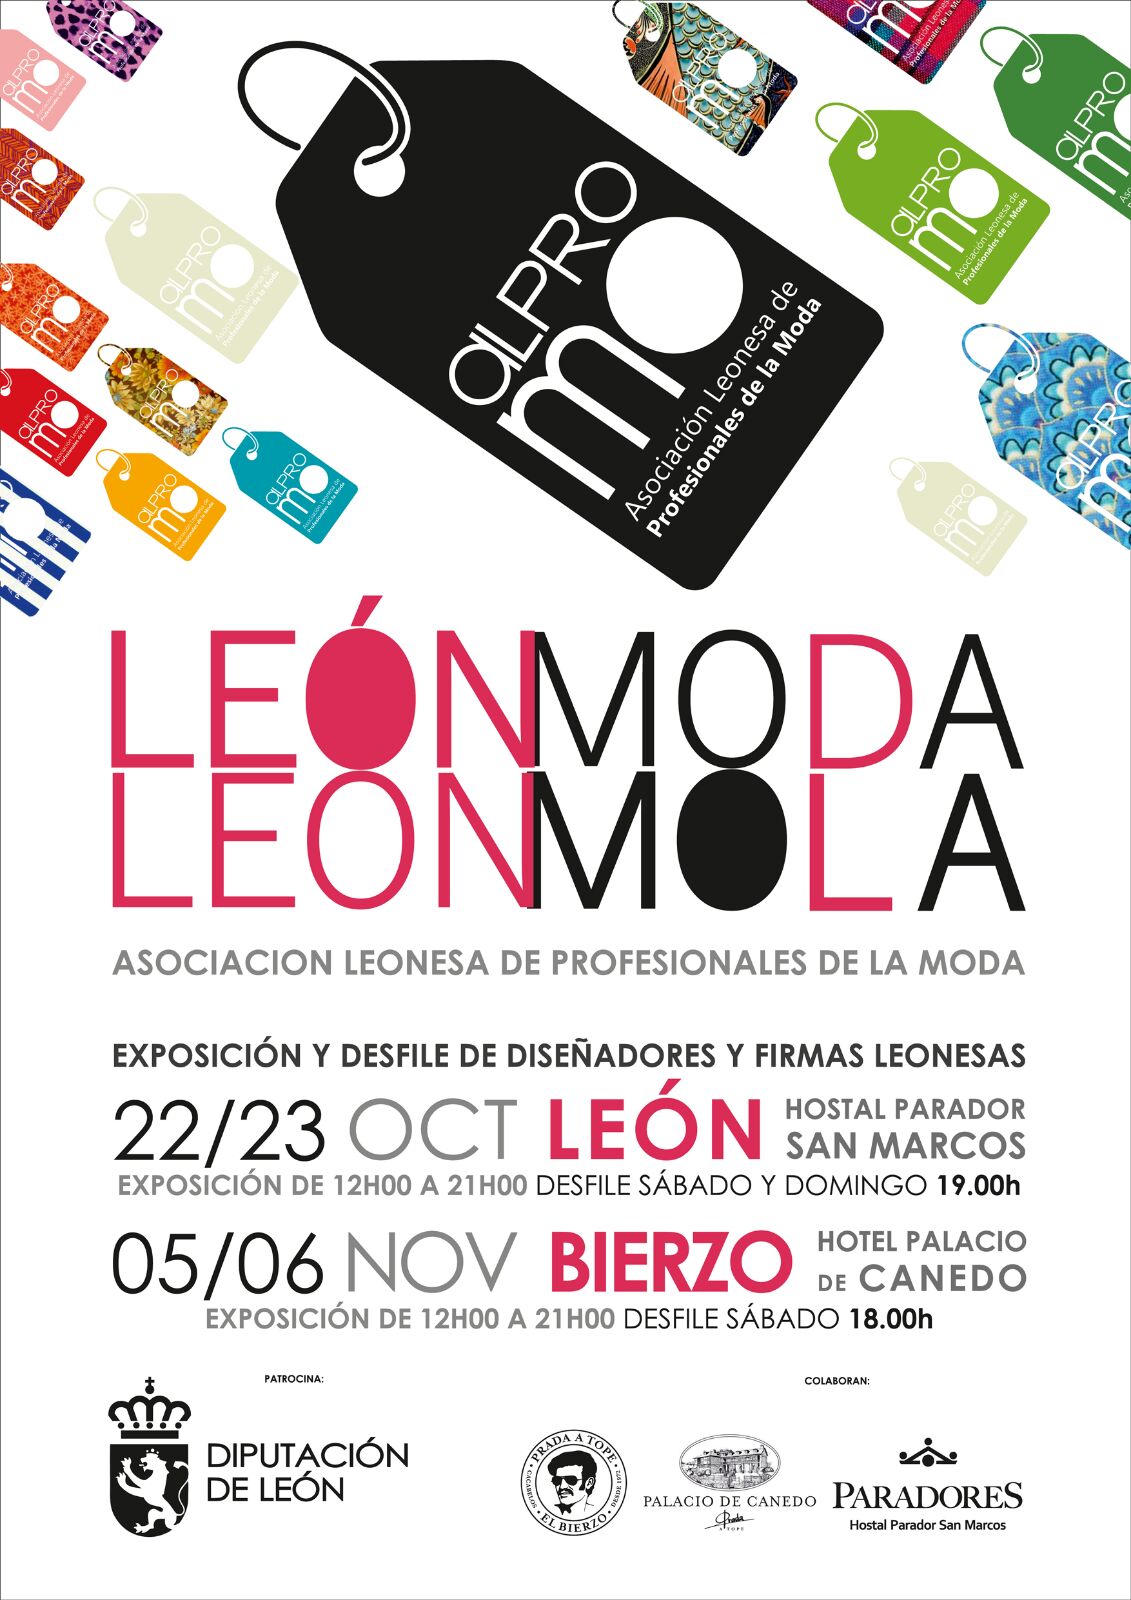 'León Moda, León Mola' una iniciativa de moda hecha en León. 5 y 6 de noviembre en el palacio de Canedo 1